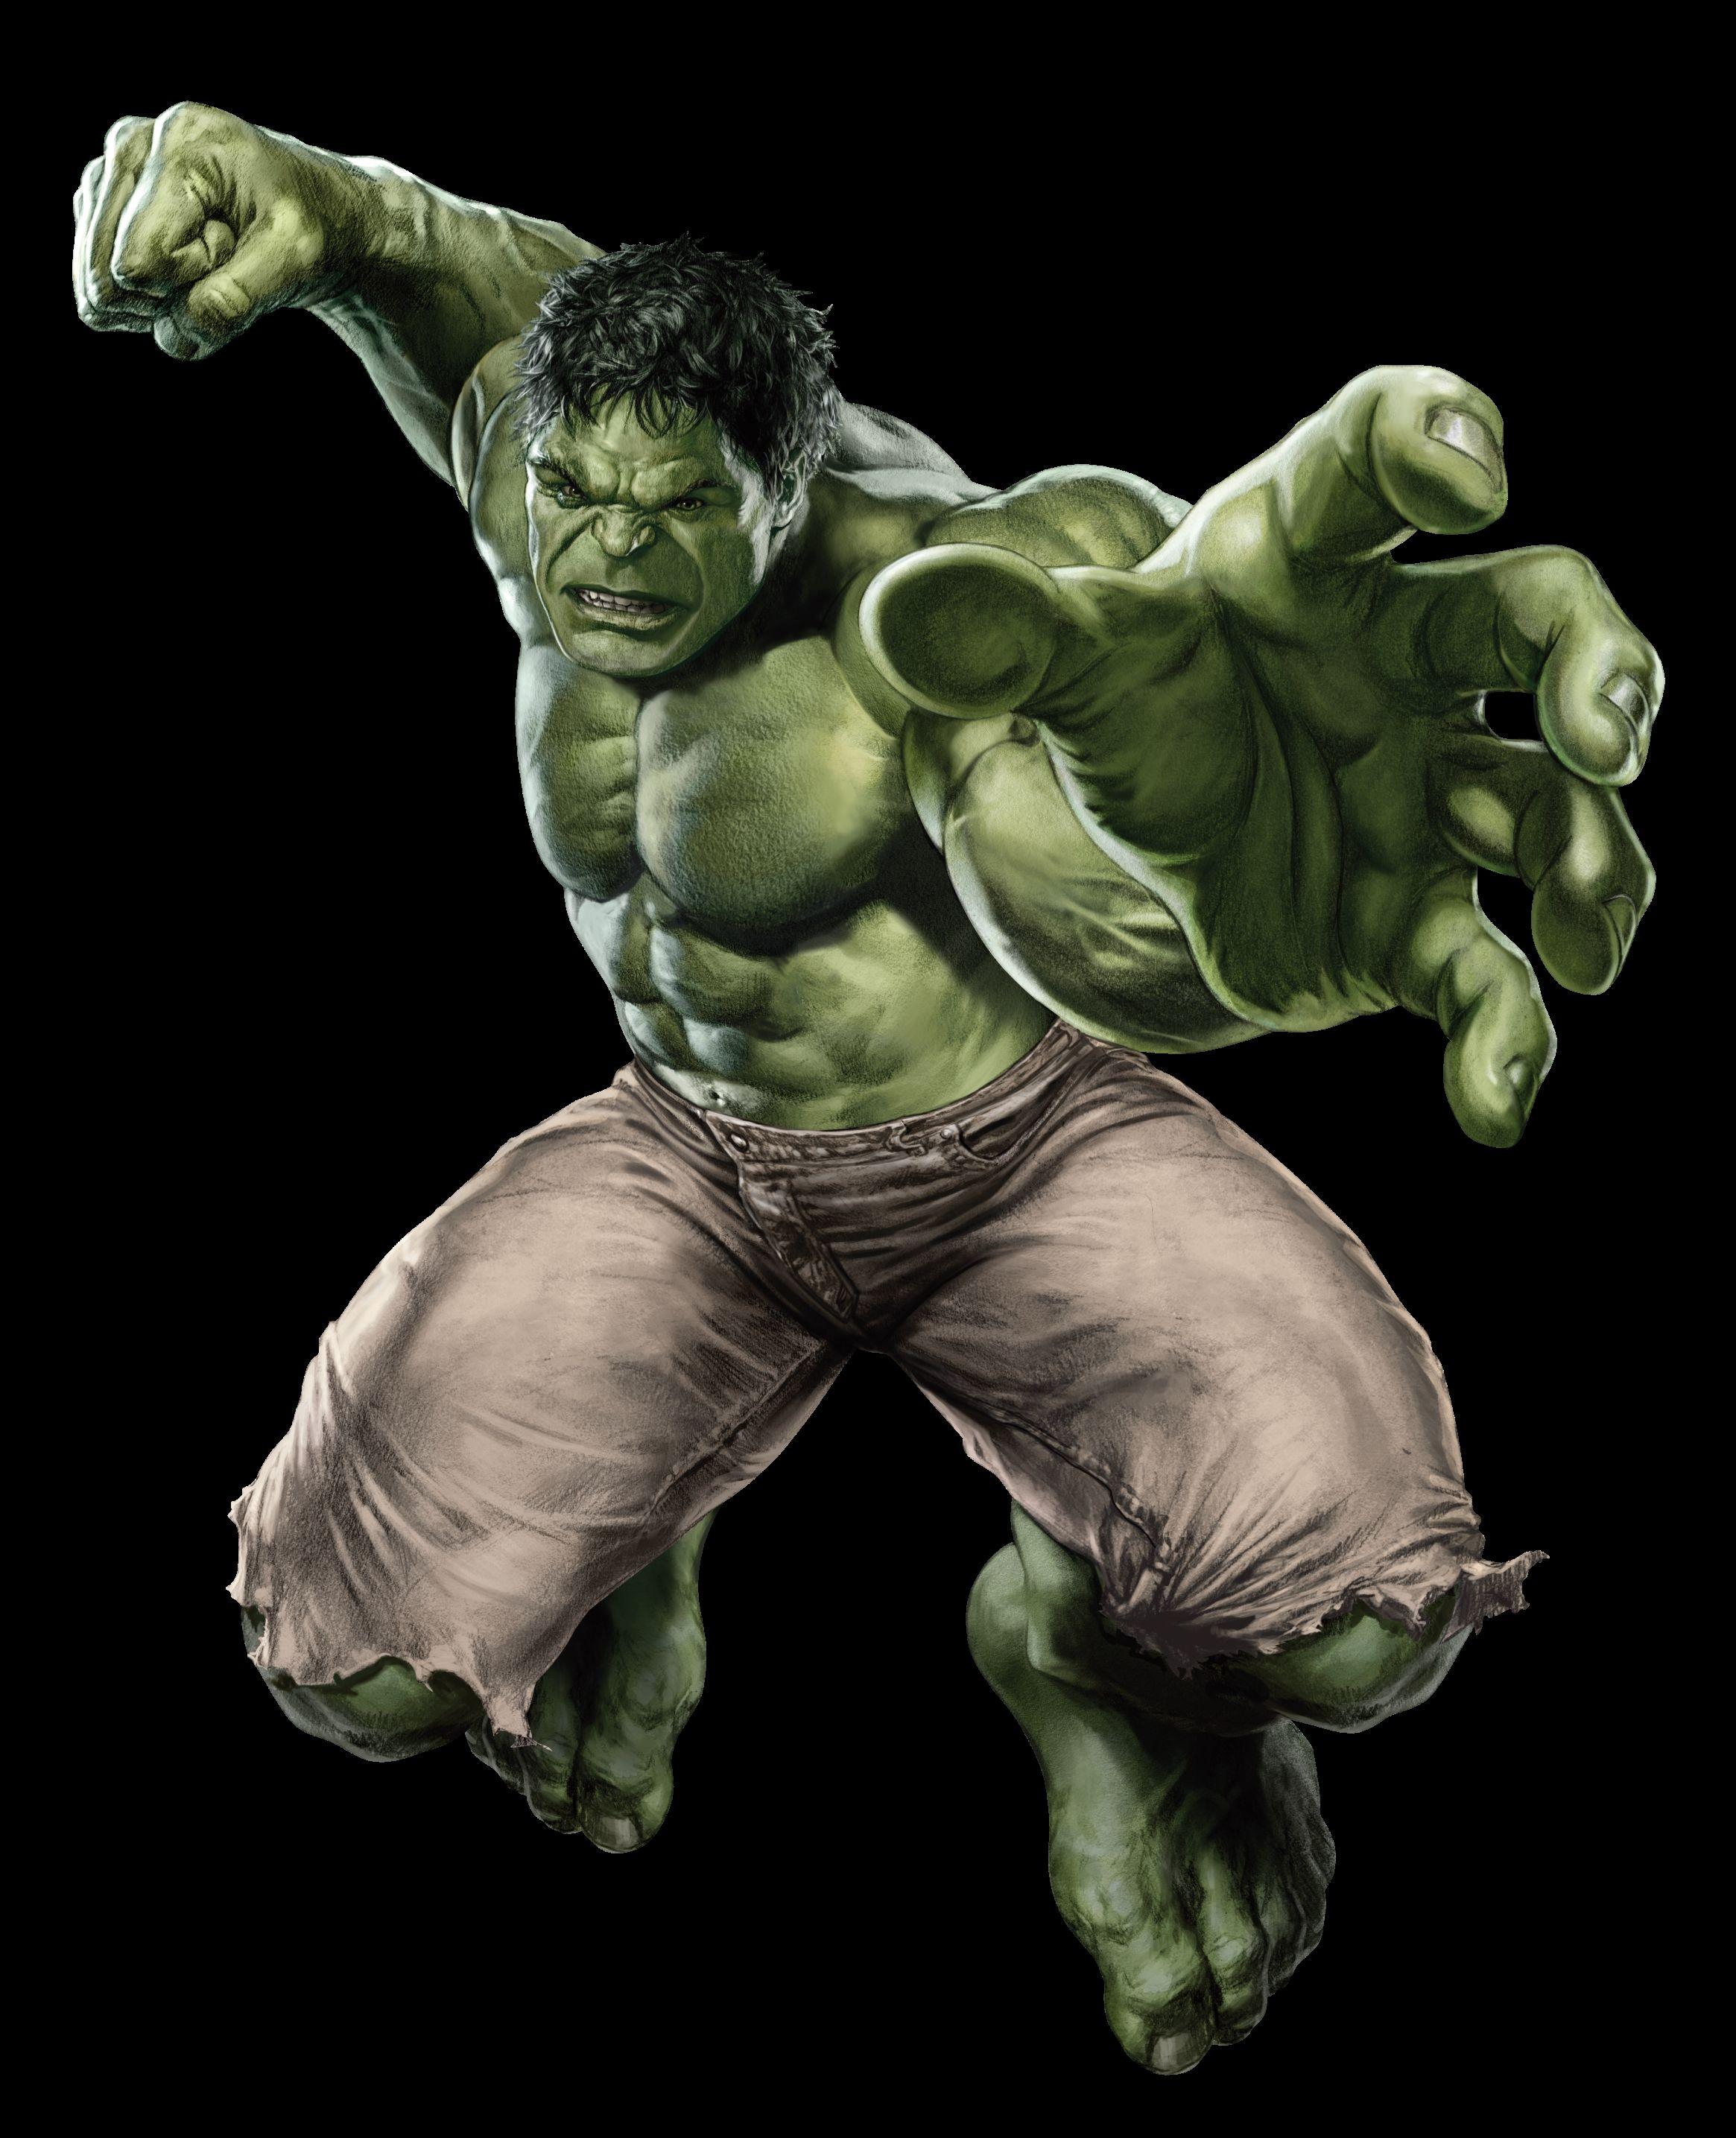 72694 hulk 3d wallpaper, The Incredible Hulk